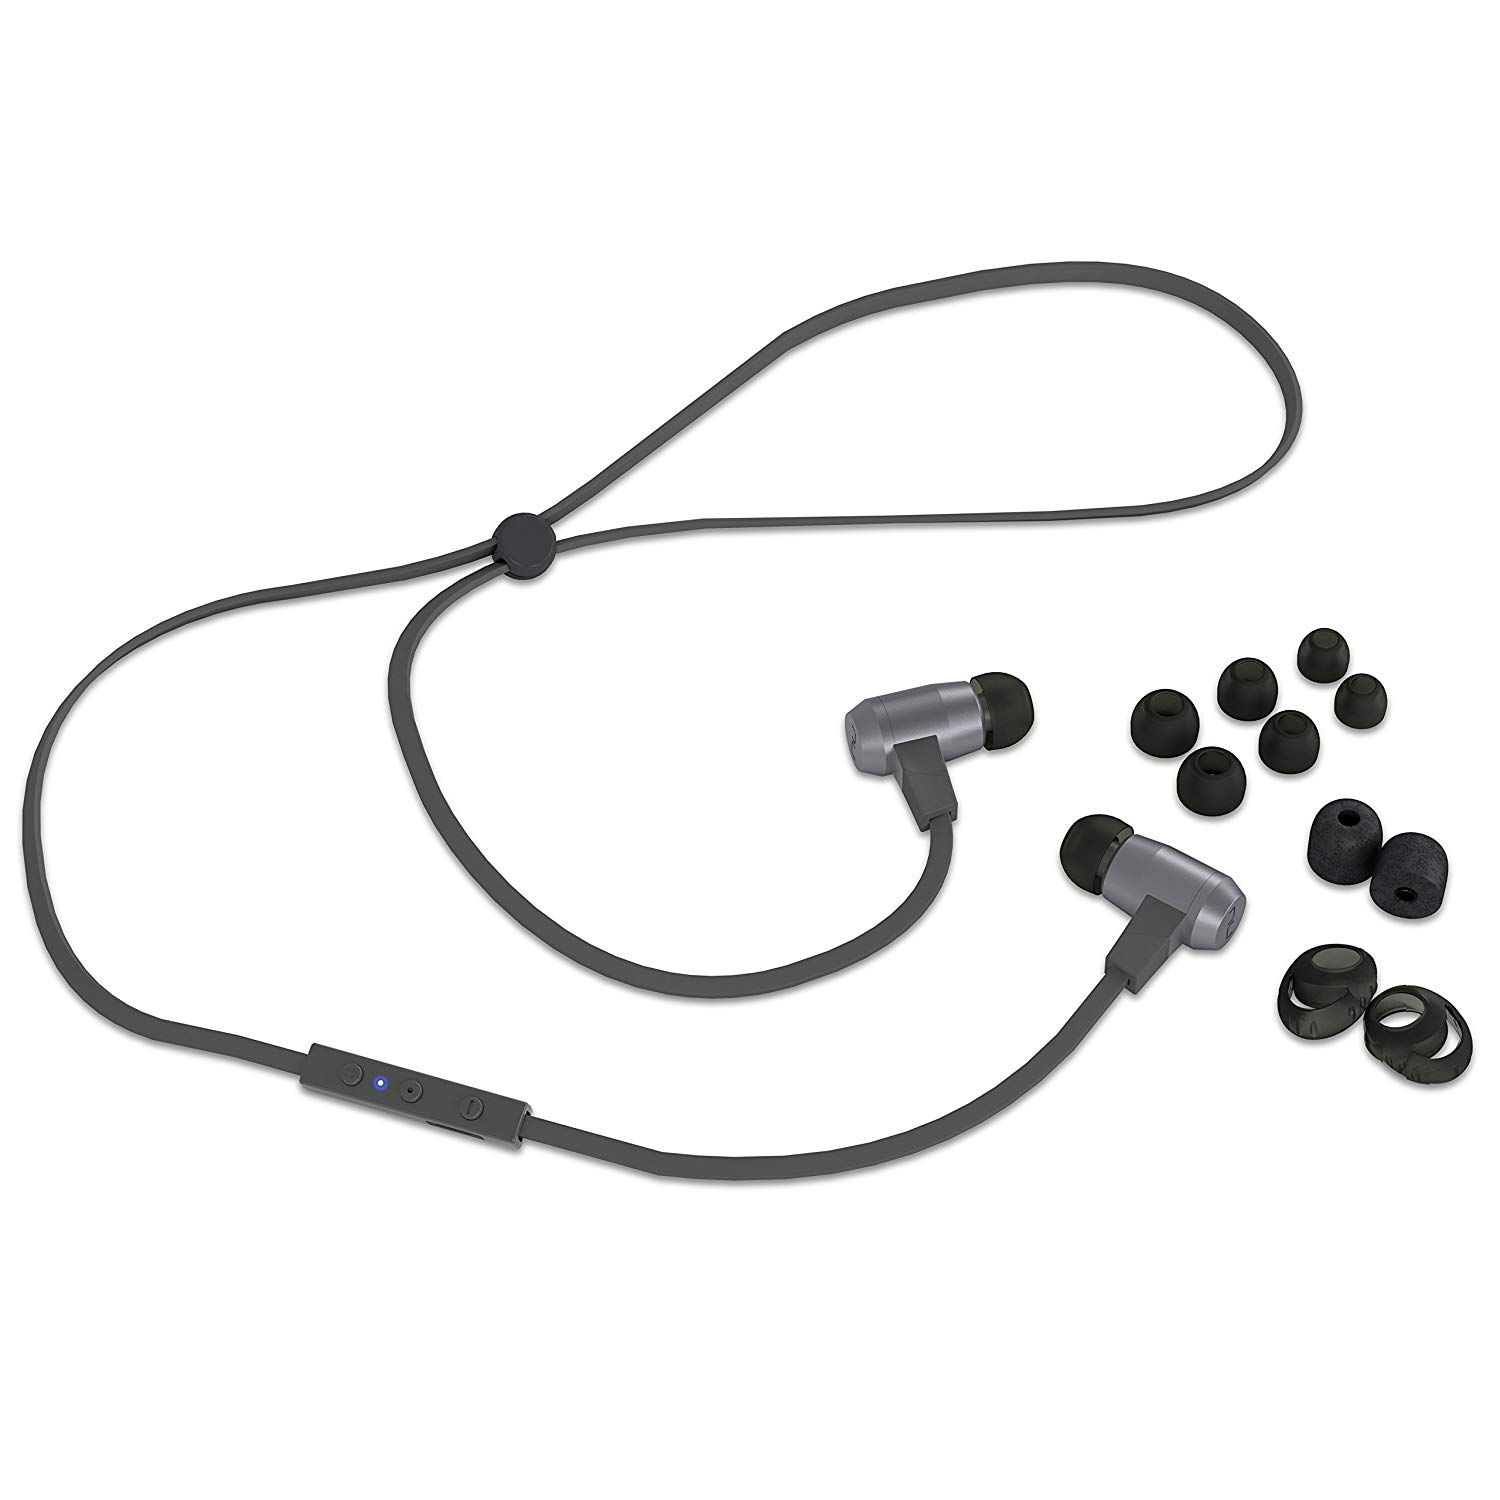 NuForce BE6 Grey Bluetooth Earphones